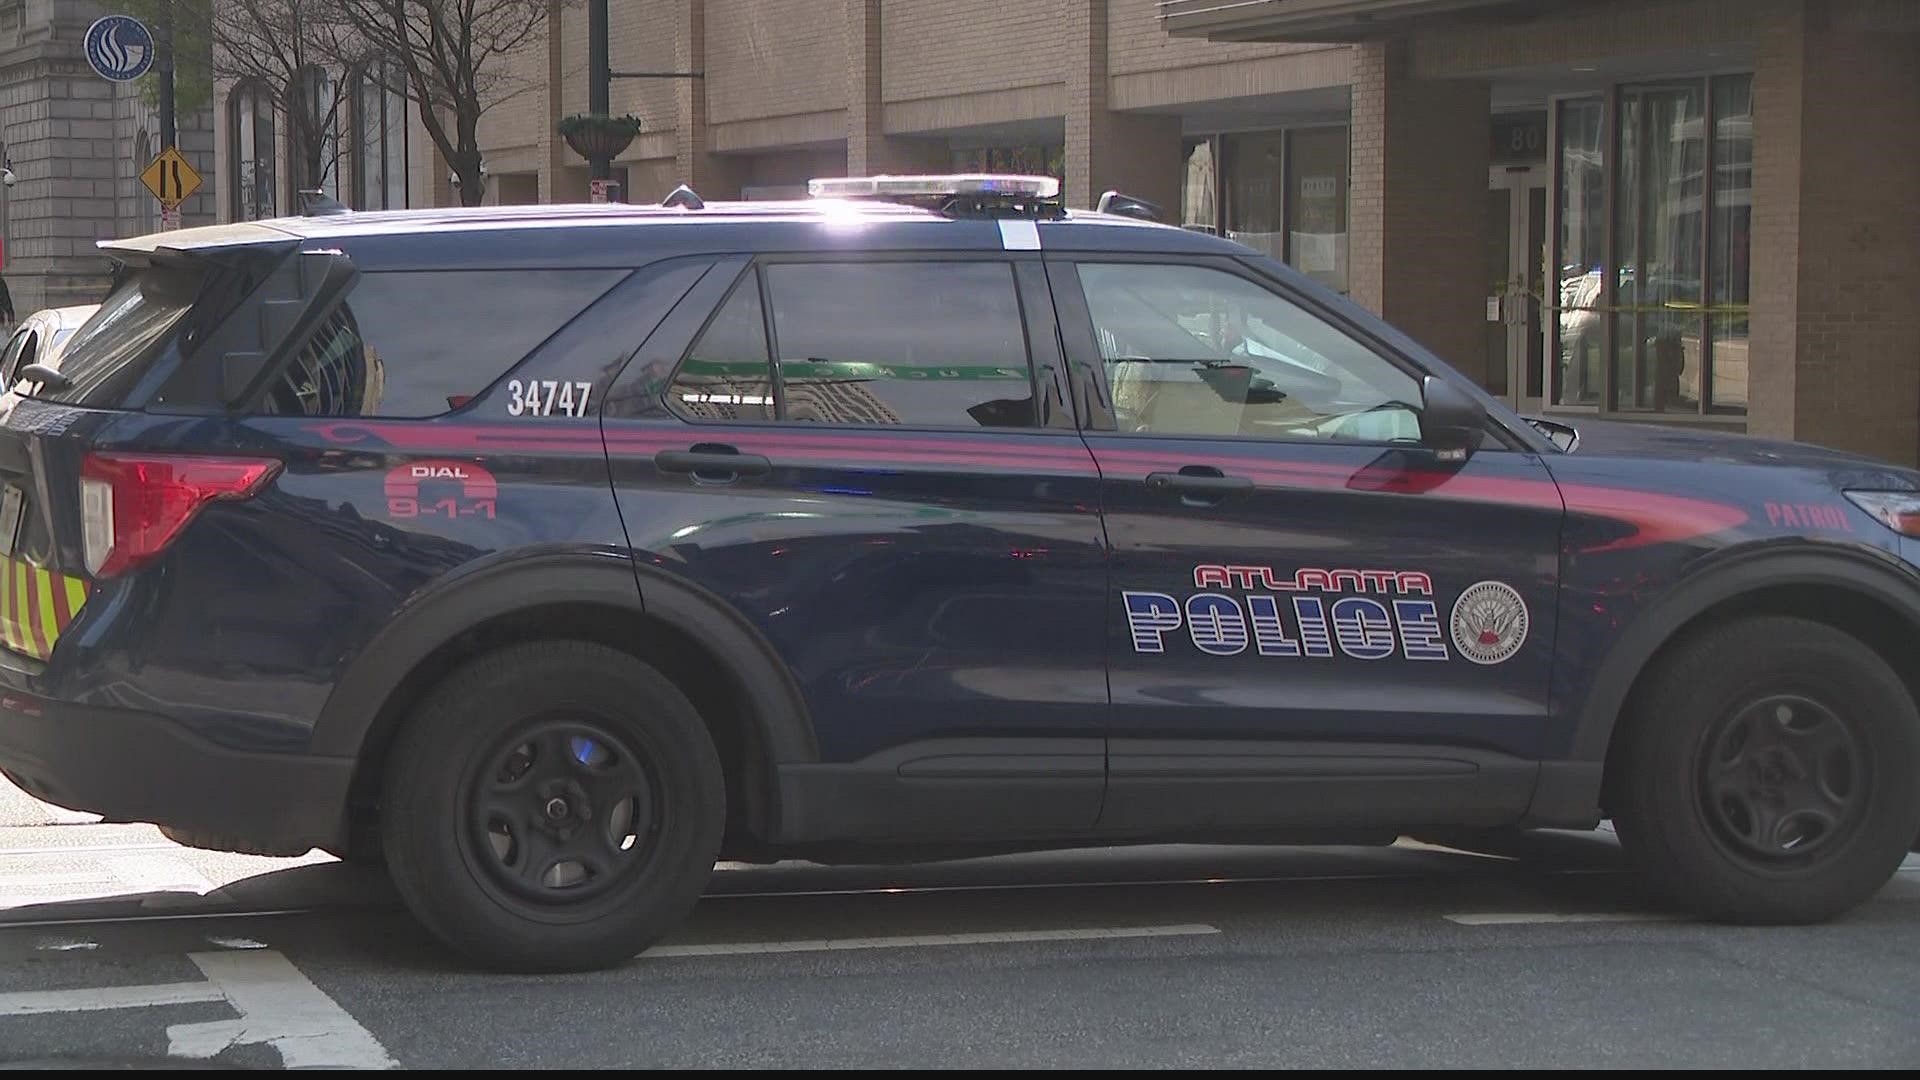 No one was severely hurt, Atlanta Police said.